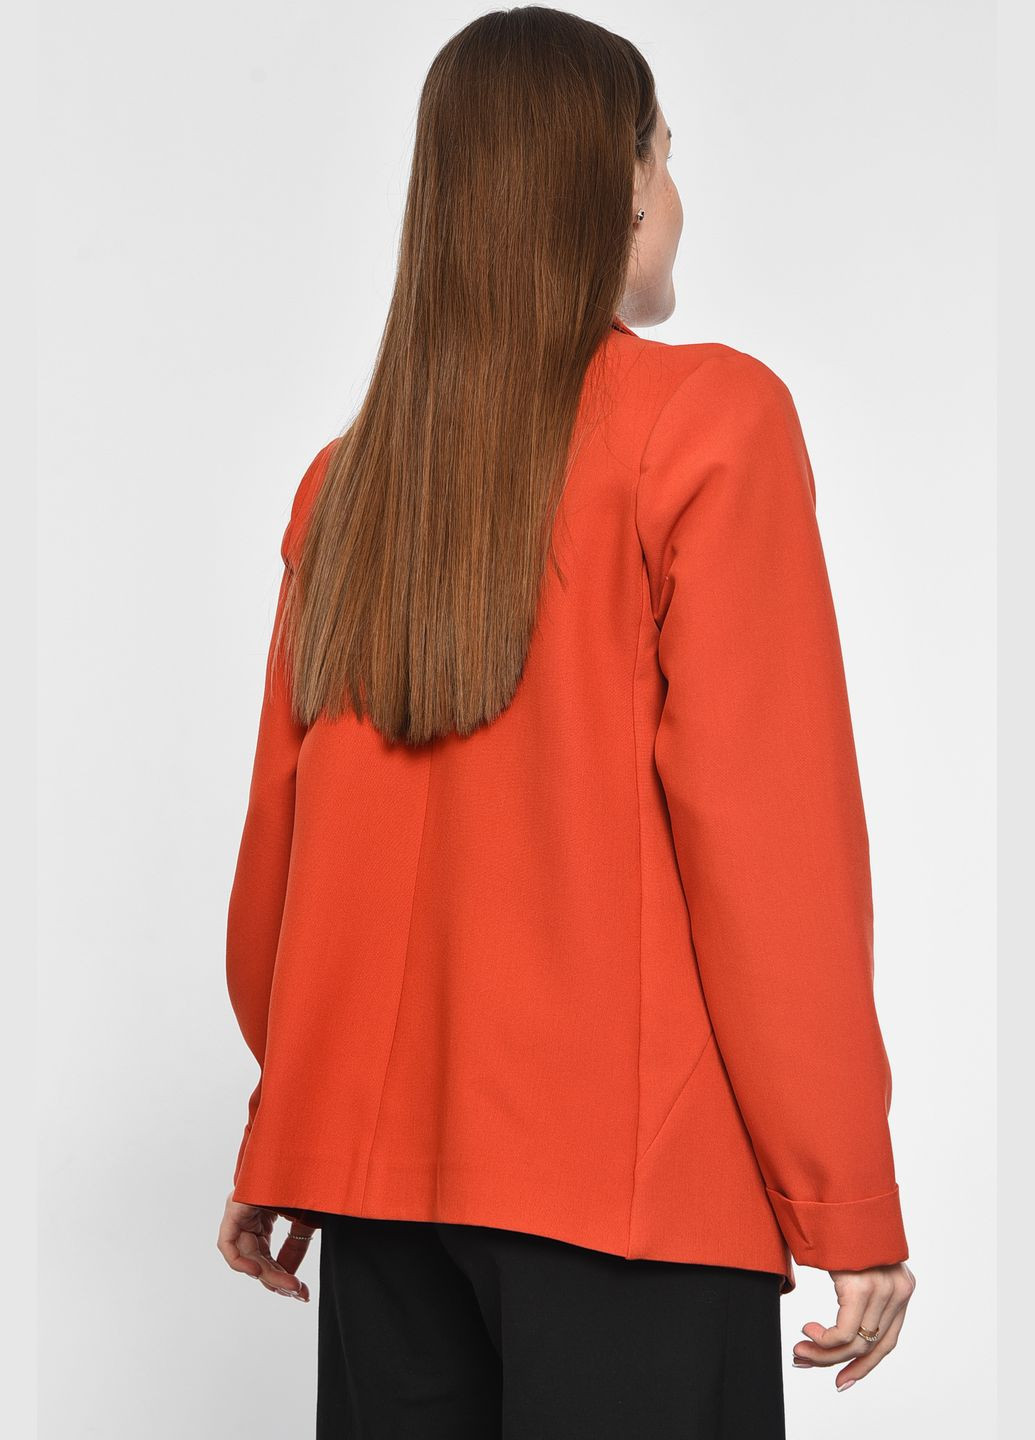 Коралловый женский пиджак женский кораллового цвета Let's Shop с орнаментом - демисезонный